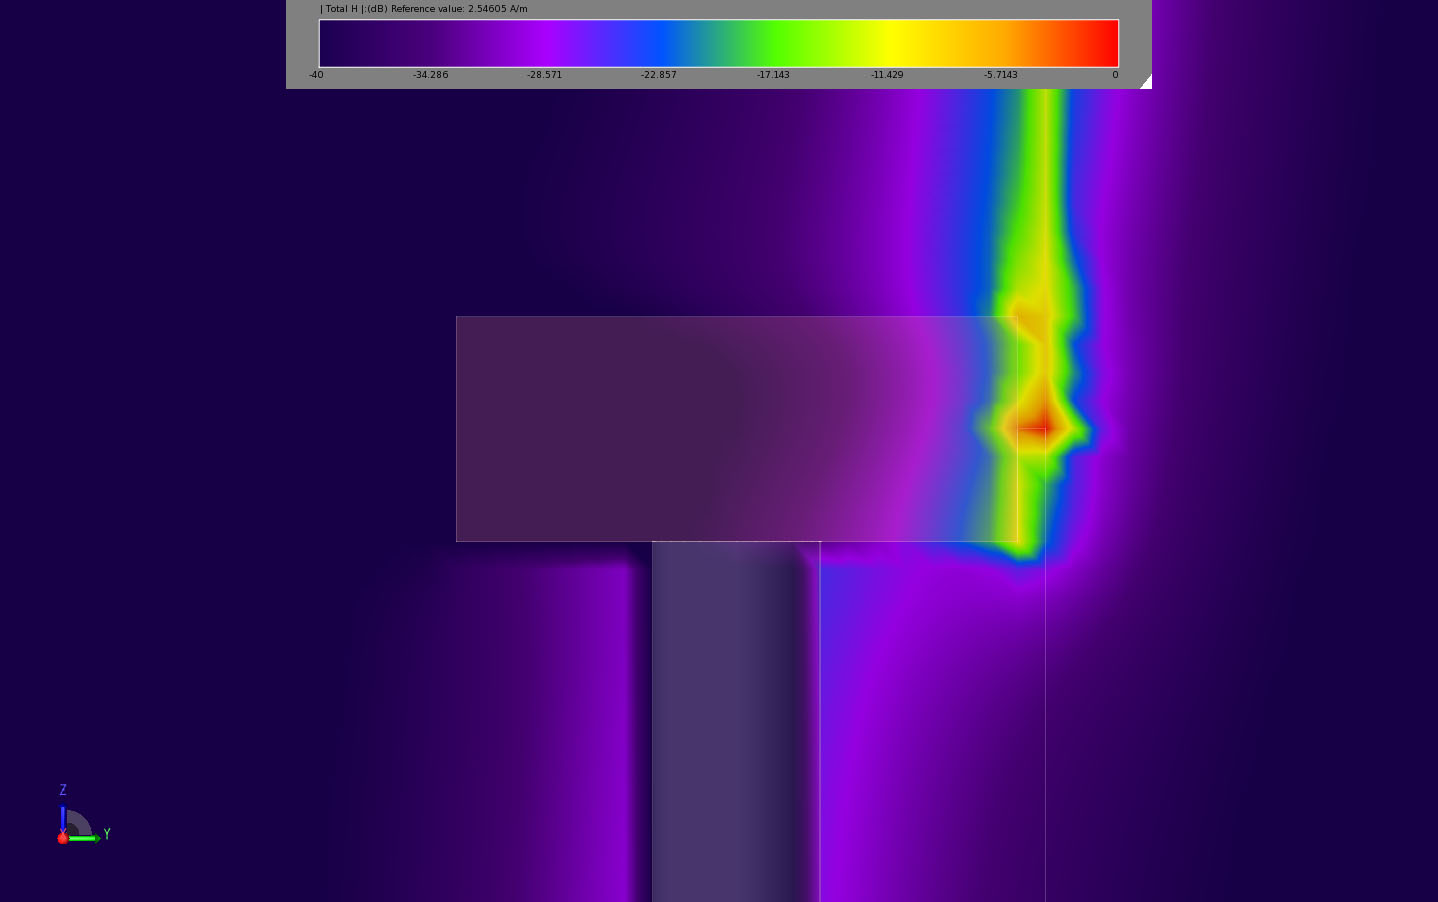 図9ブレード先端に衝突した場合のナセル断面における平面時間領域磁場を示す。